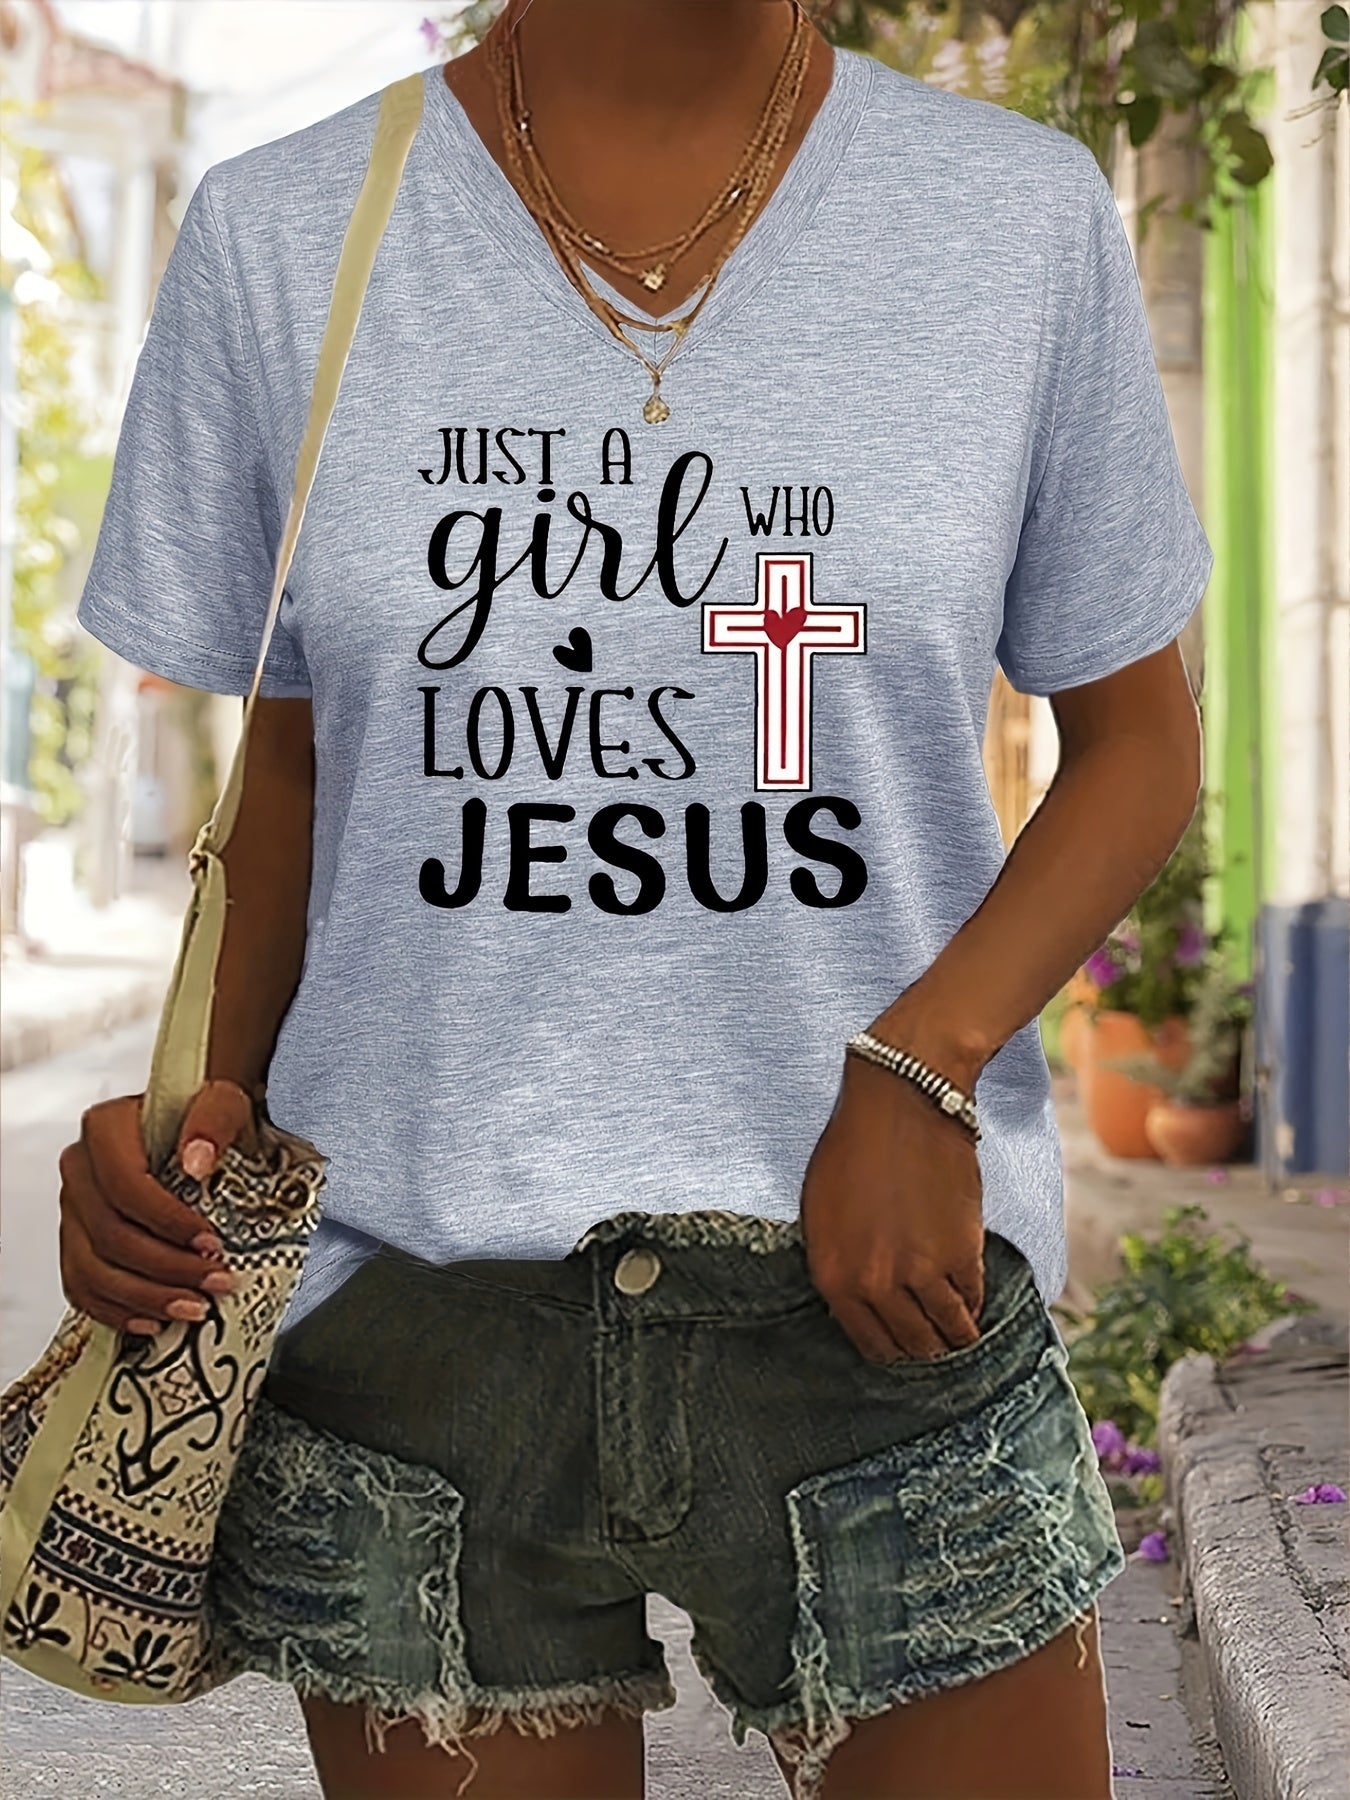 Just A Girl Who Loves Jesus Women's Christian V Neck T-Shirt claimedbygoddesigns